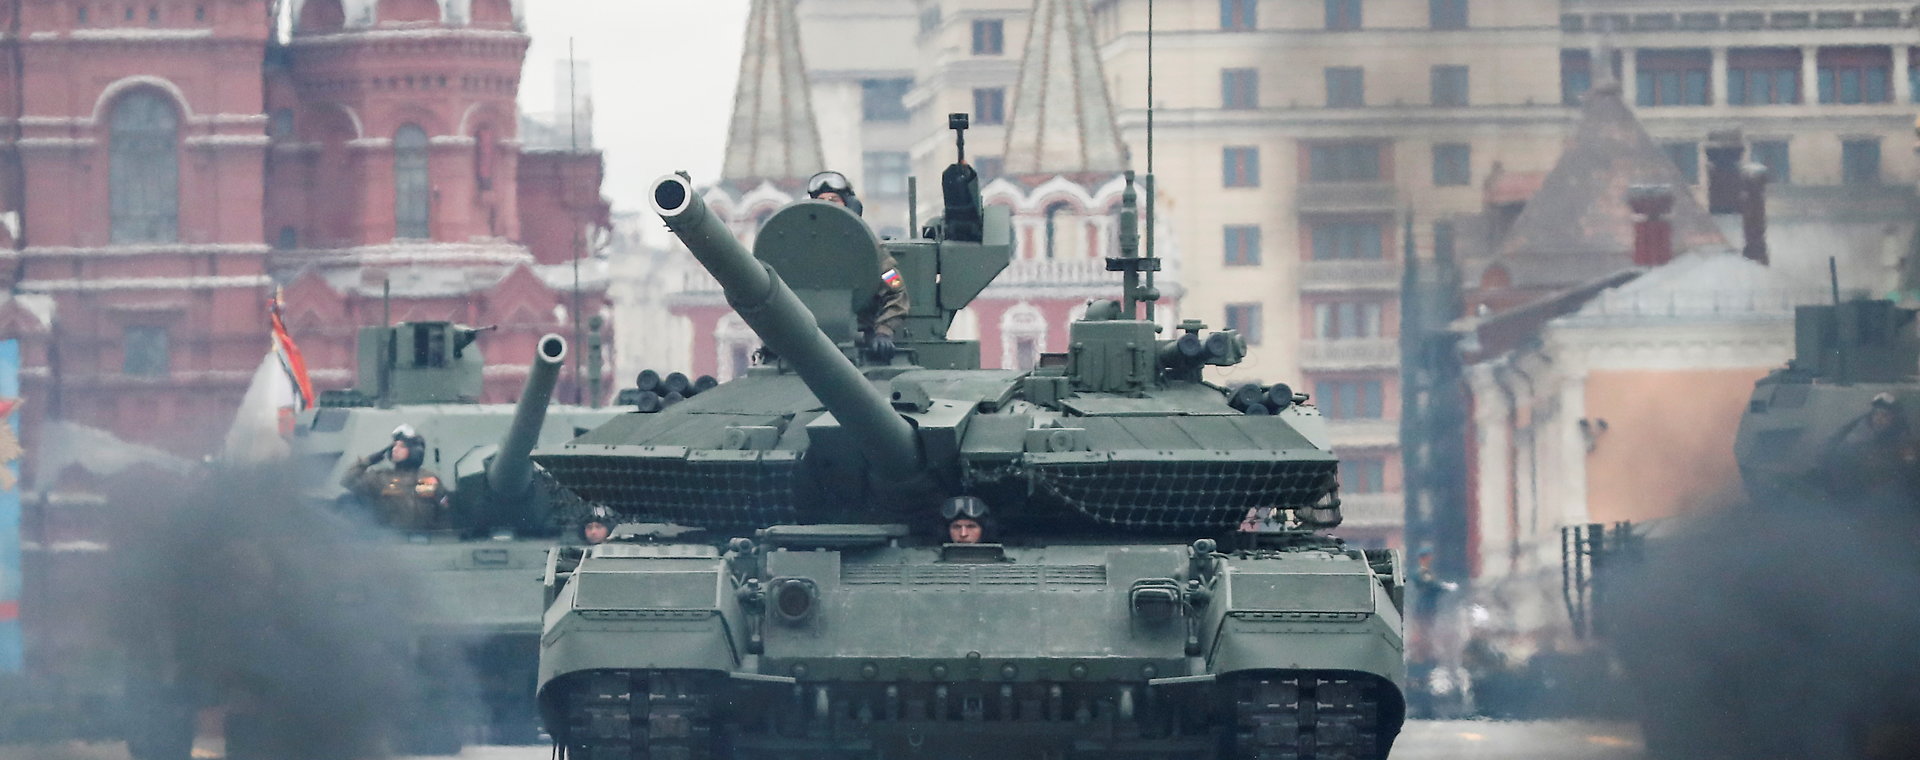 Rosyjski czołg T-90M podczas parady z okazji Dnia Zwycięstwa na Placu Czerwonym w Moskwie, 9 maja 2021 r.